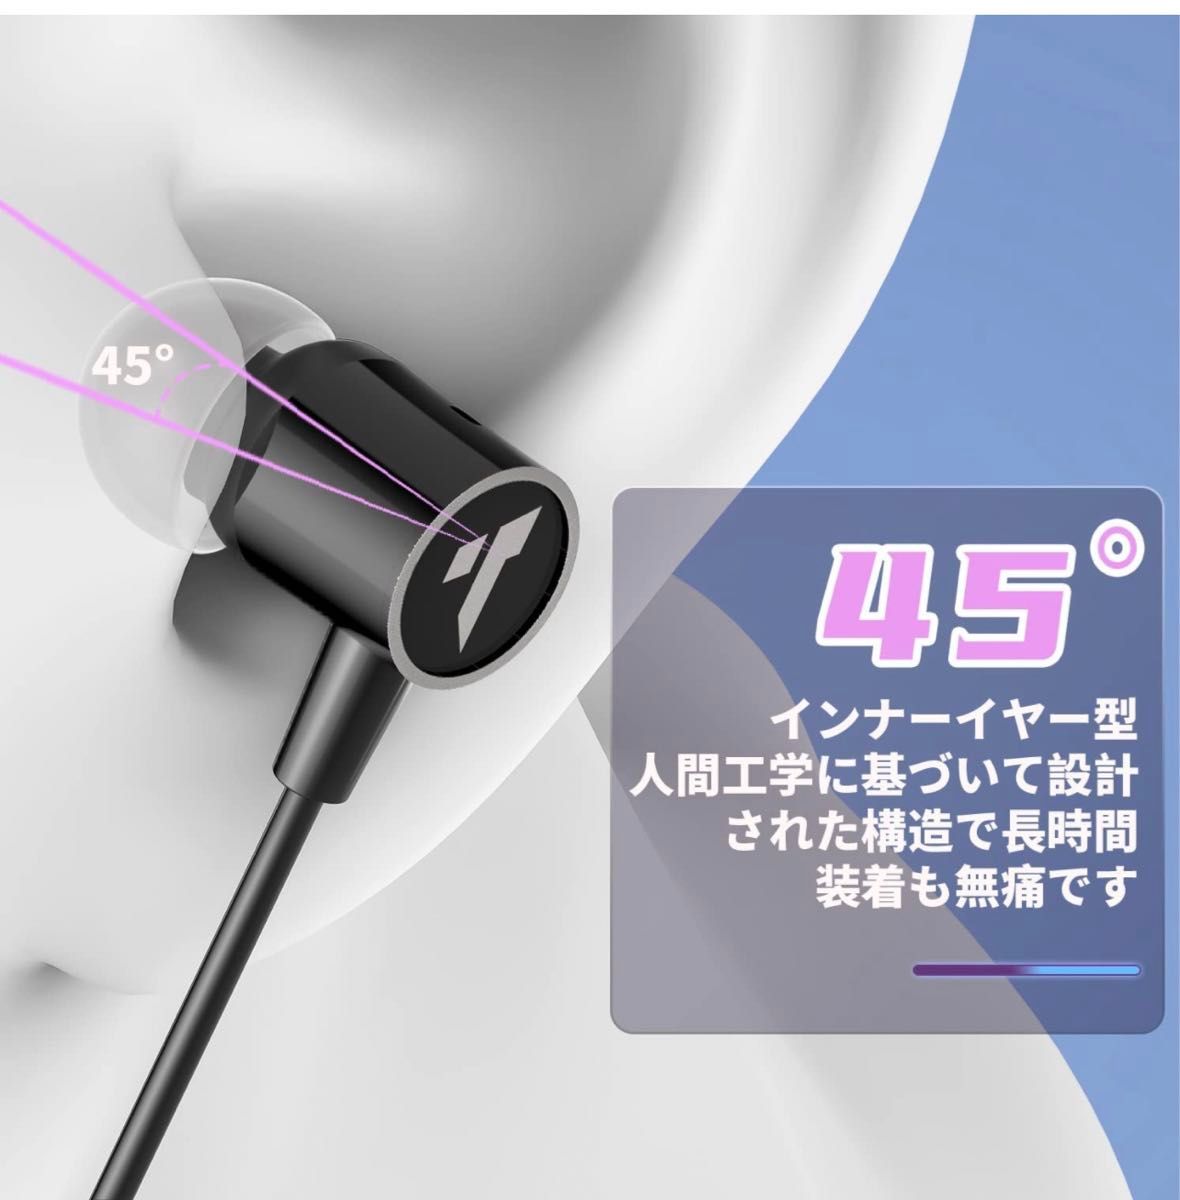 Bluetooth5.2 イヤホン ワイヤレスイヤホン 首かけイヤホン スポーツ